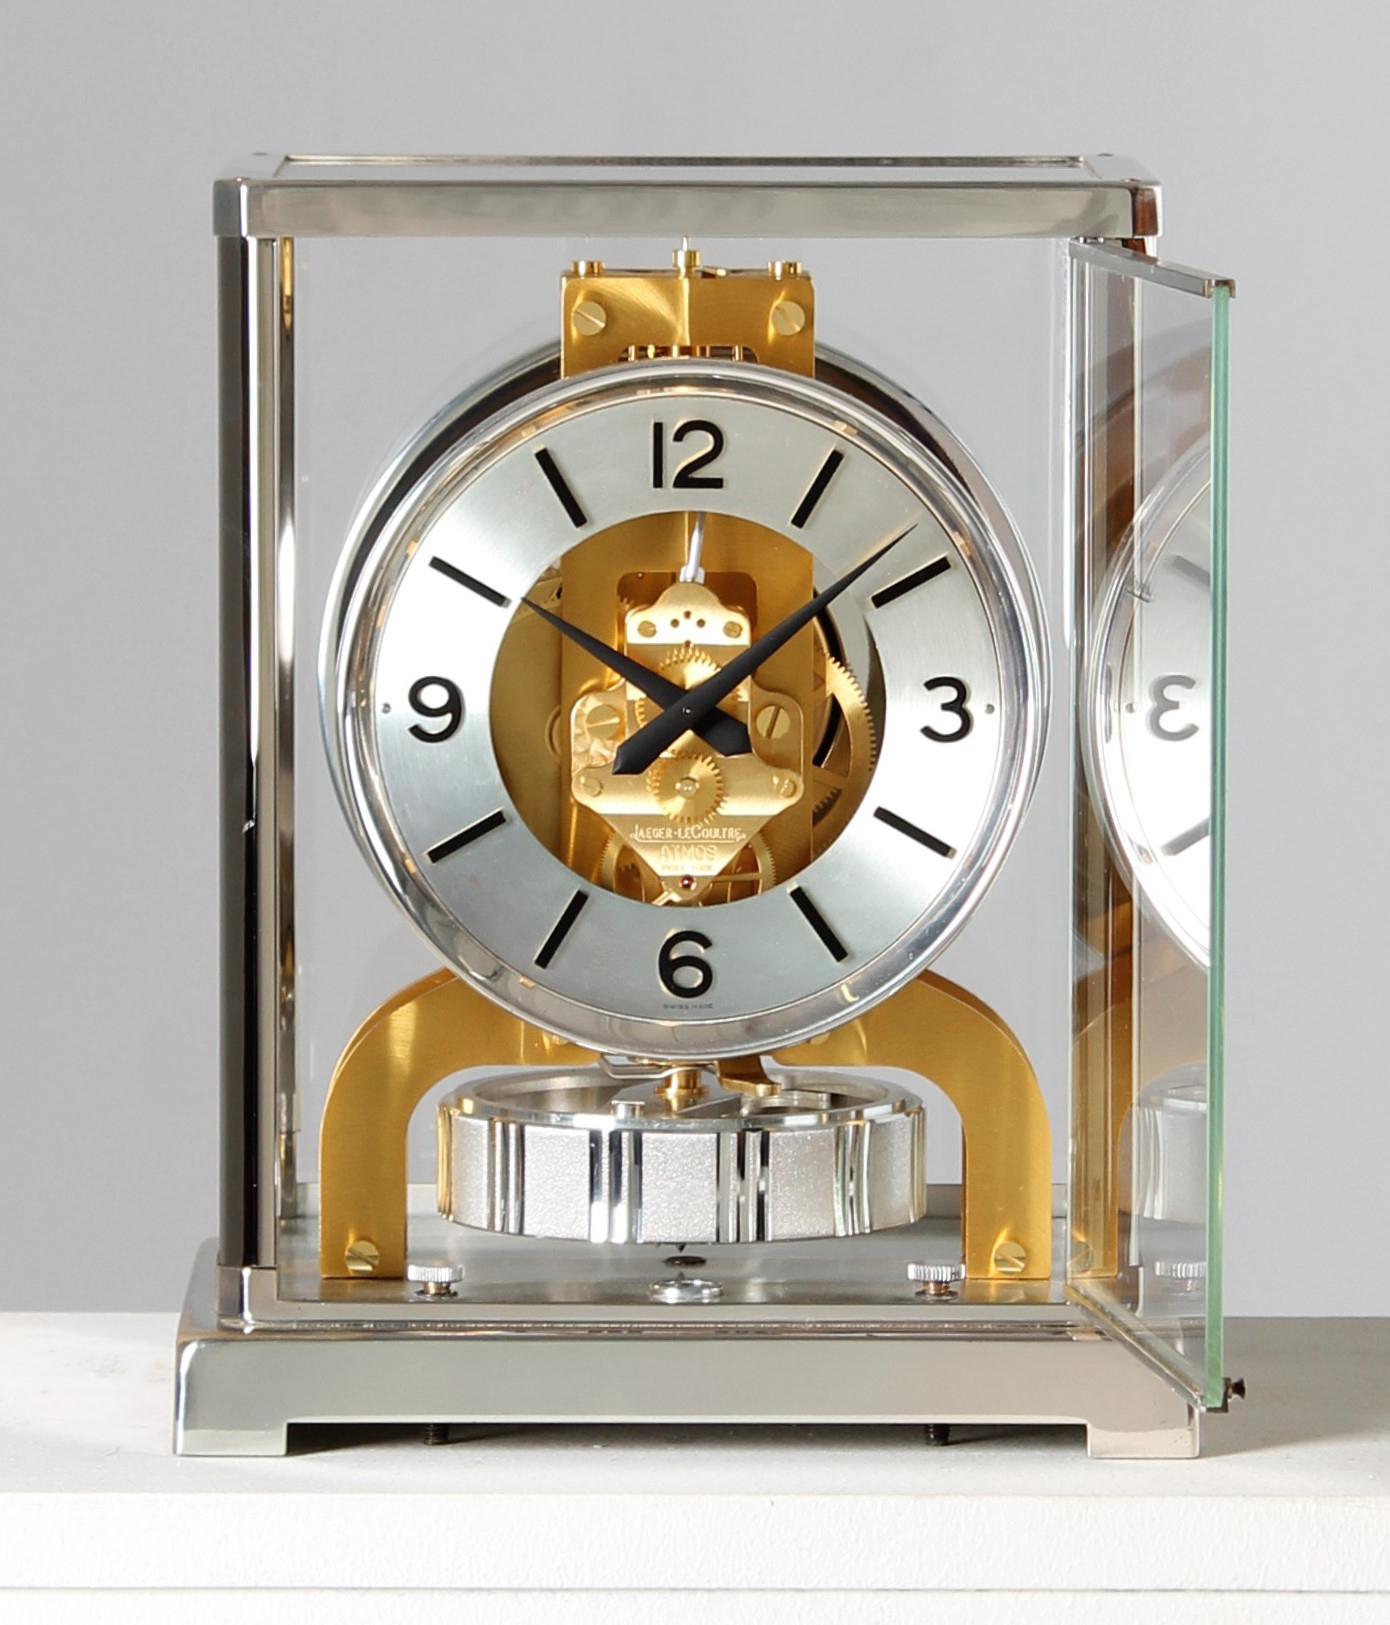 Jaeger-LeCoultre - Atmos Uhr in silber-goldener Zweifarbenausführung

Schweiz
Vernickeltes und vergoldetes Messing
Jahr der Herstellung 1978

Abmessungen: H x B x T: 22 x 18 x 13,5 cm

Beschreibung:
Das Kaliber 526 der Atmos V wurde in zahlreichen